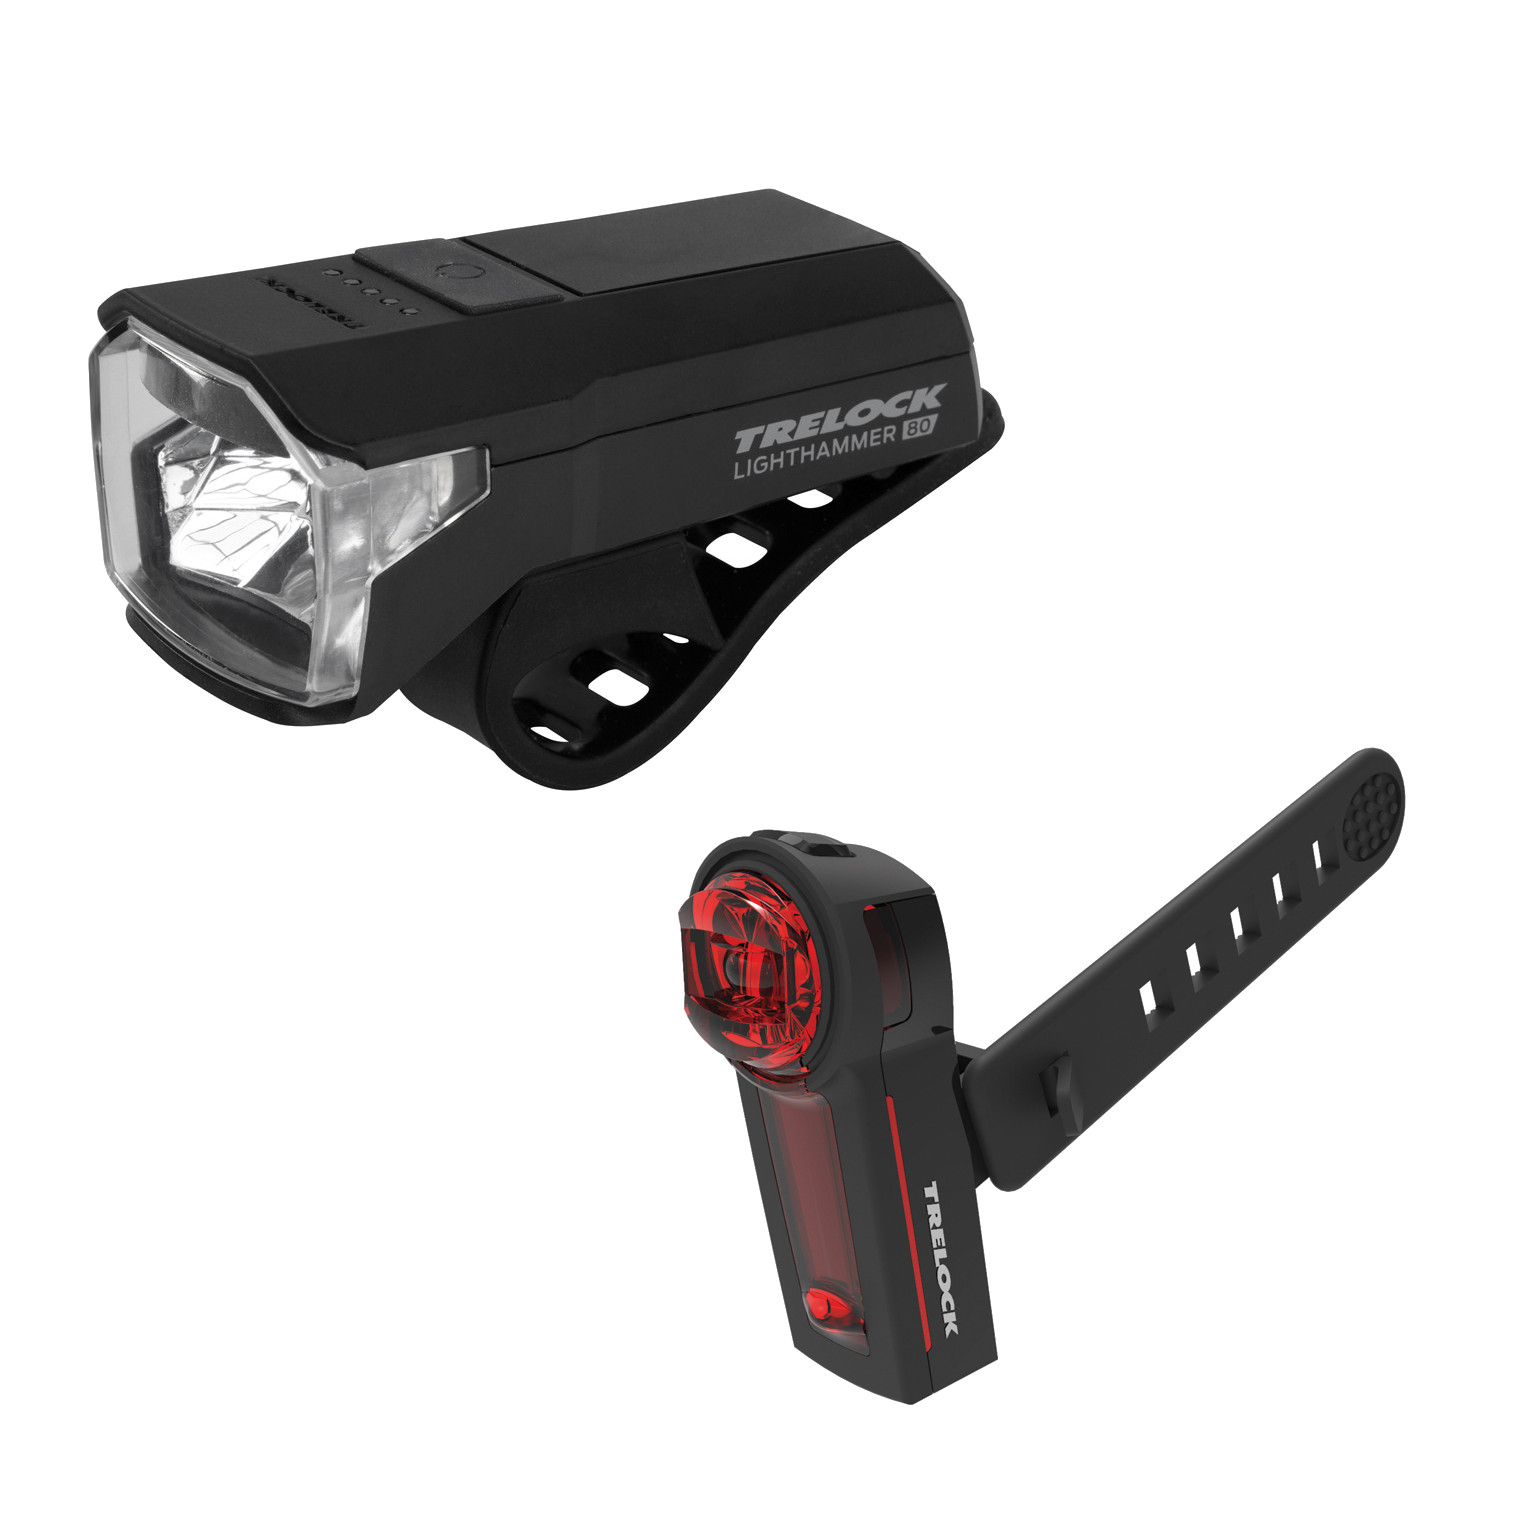 Produktbild von Trelock LS 480 Lighthammer USB + LS 740 Vector Signal - Fahrradbeleuchtungs-Set